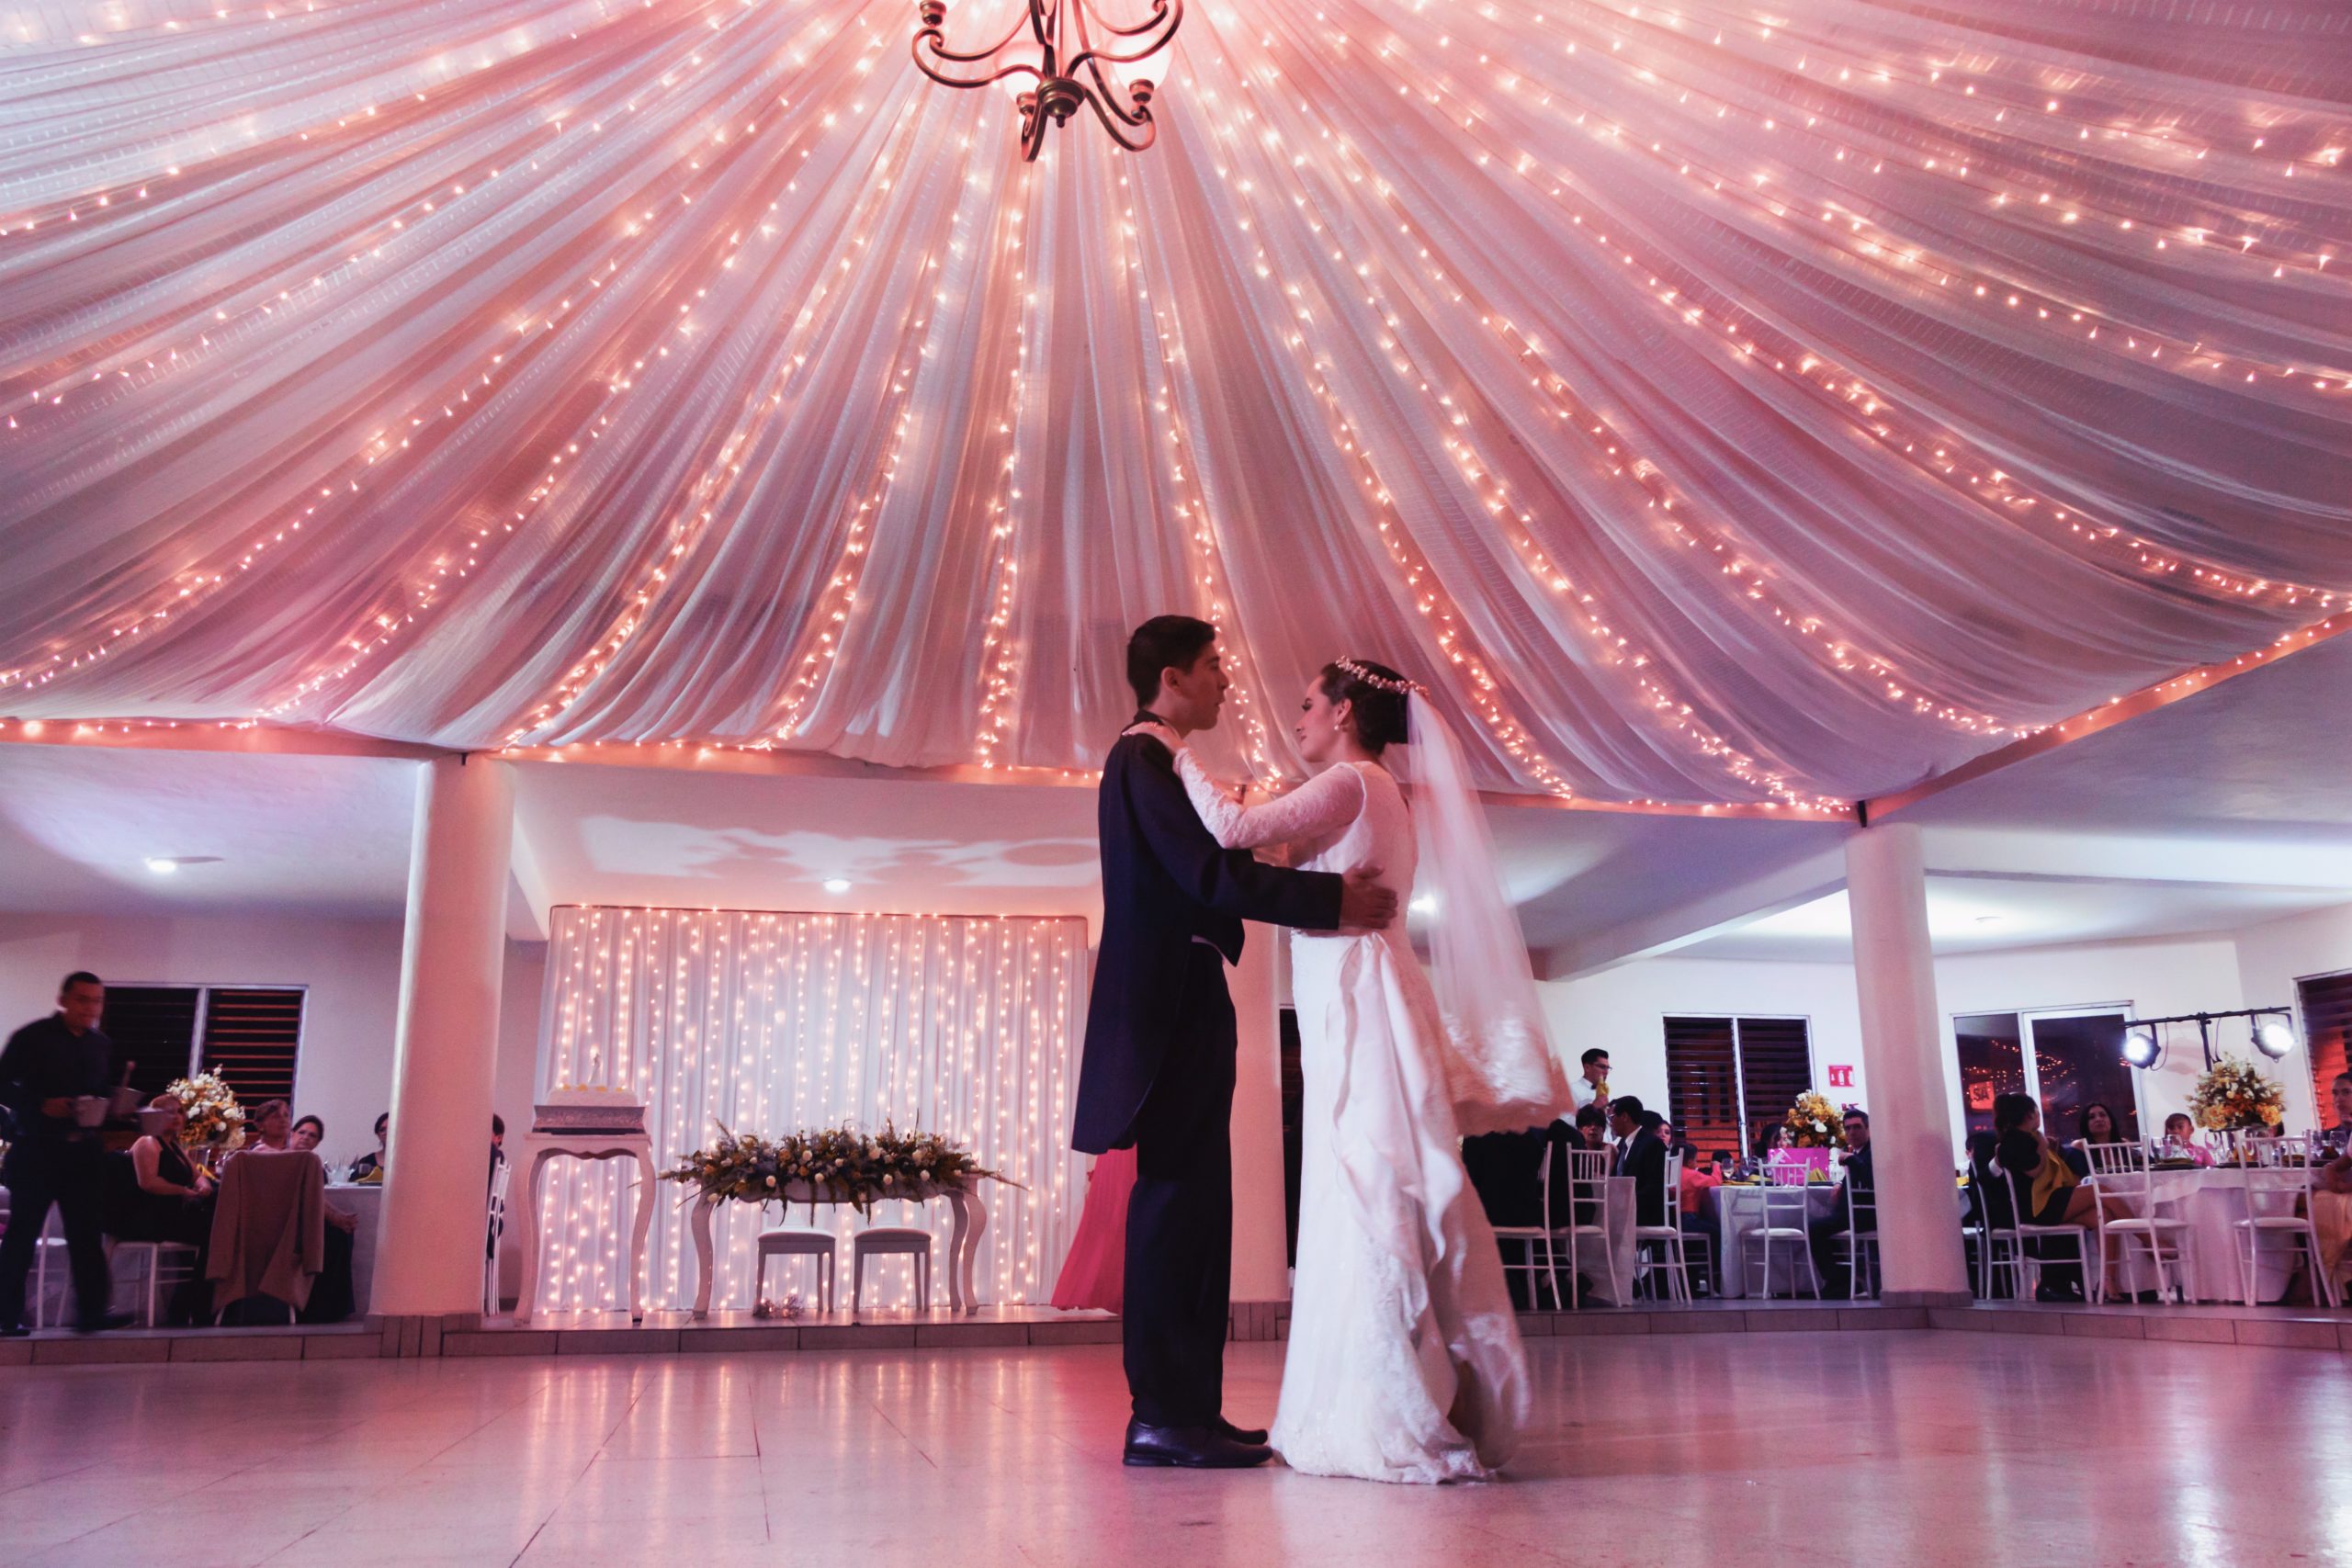 pareja de novios bailando en un salón bajo una carpa rosada y luces que iluminan todo